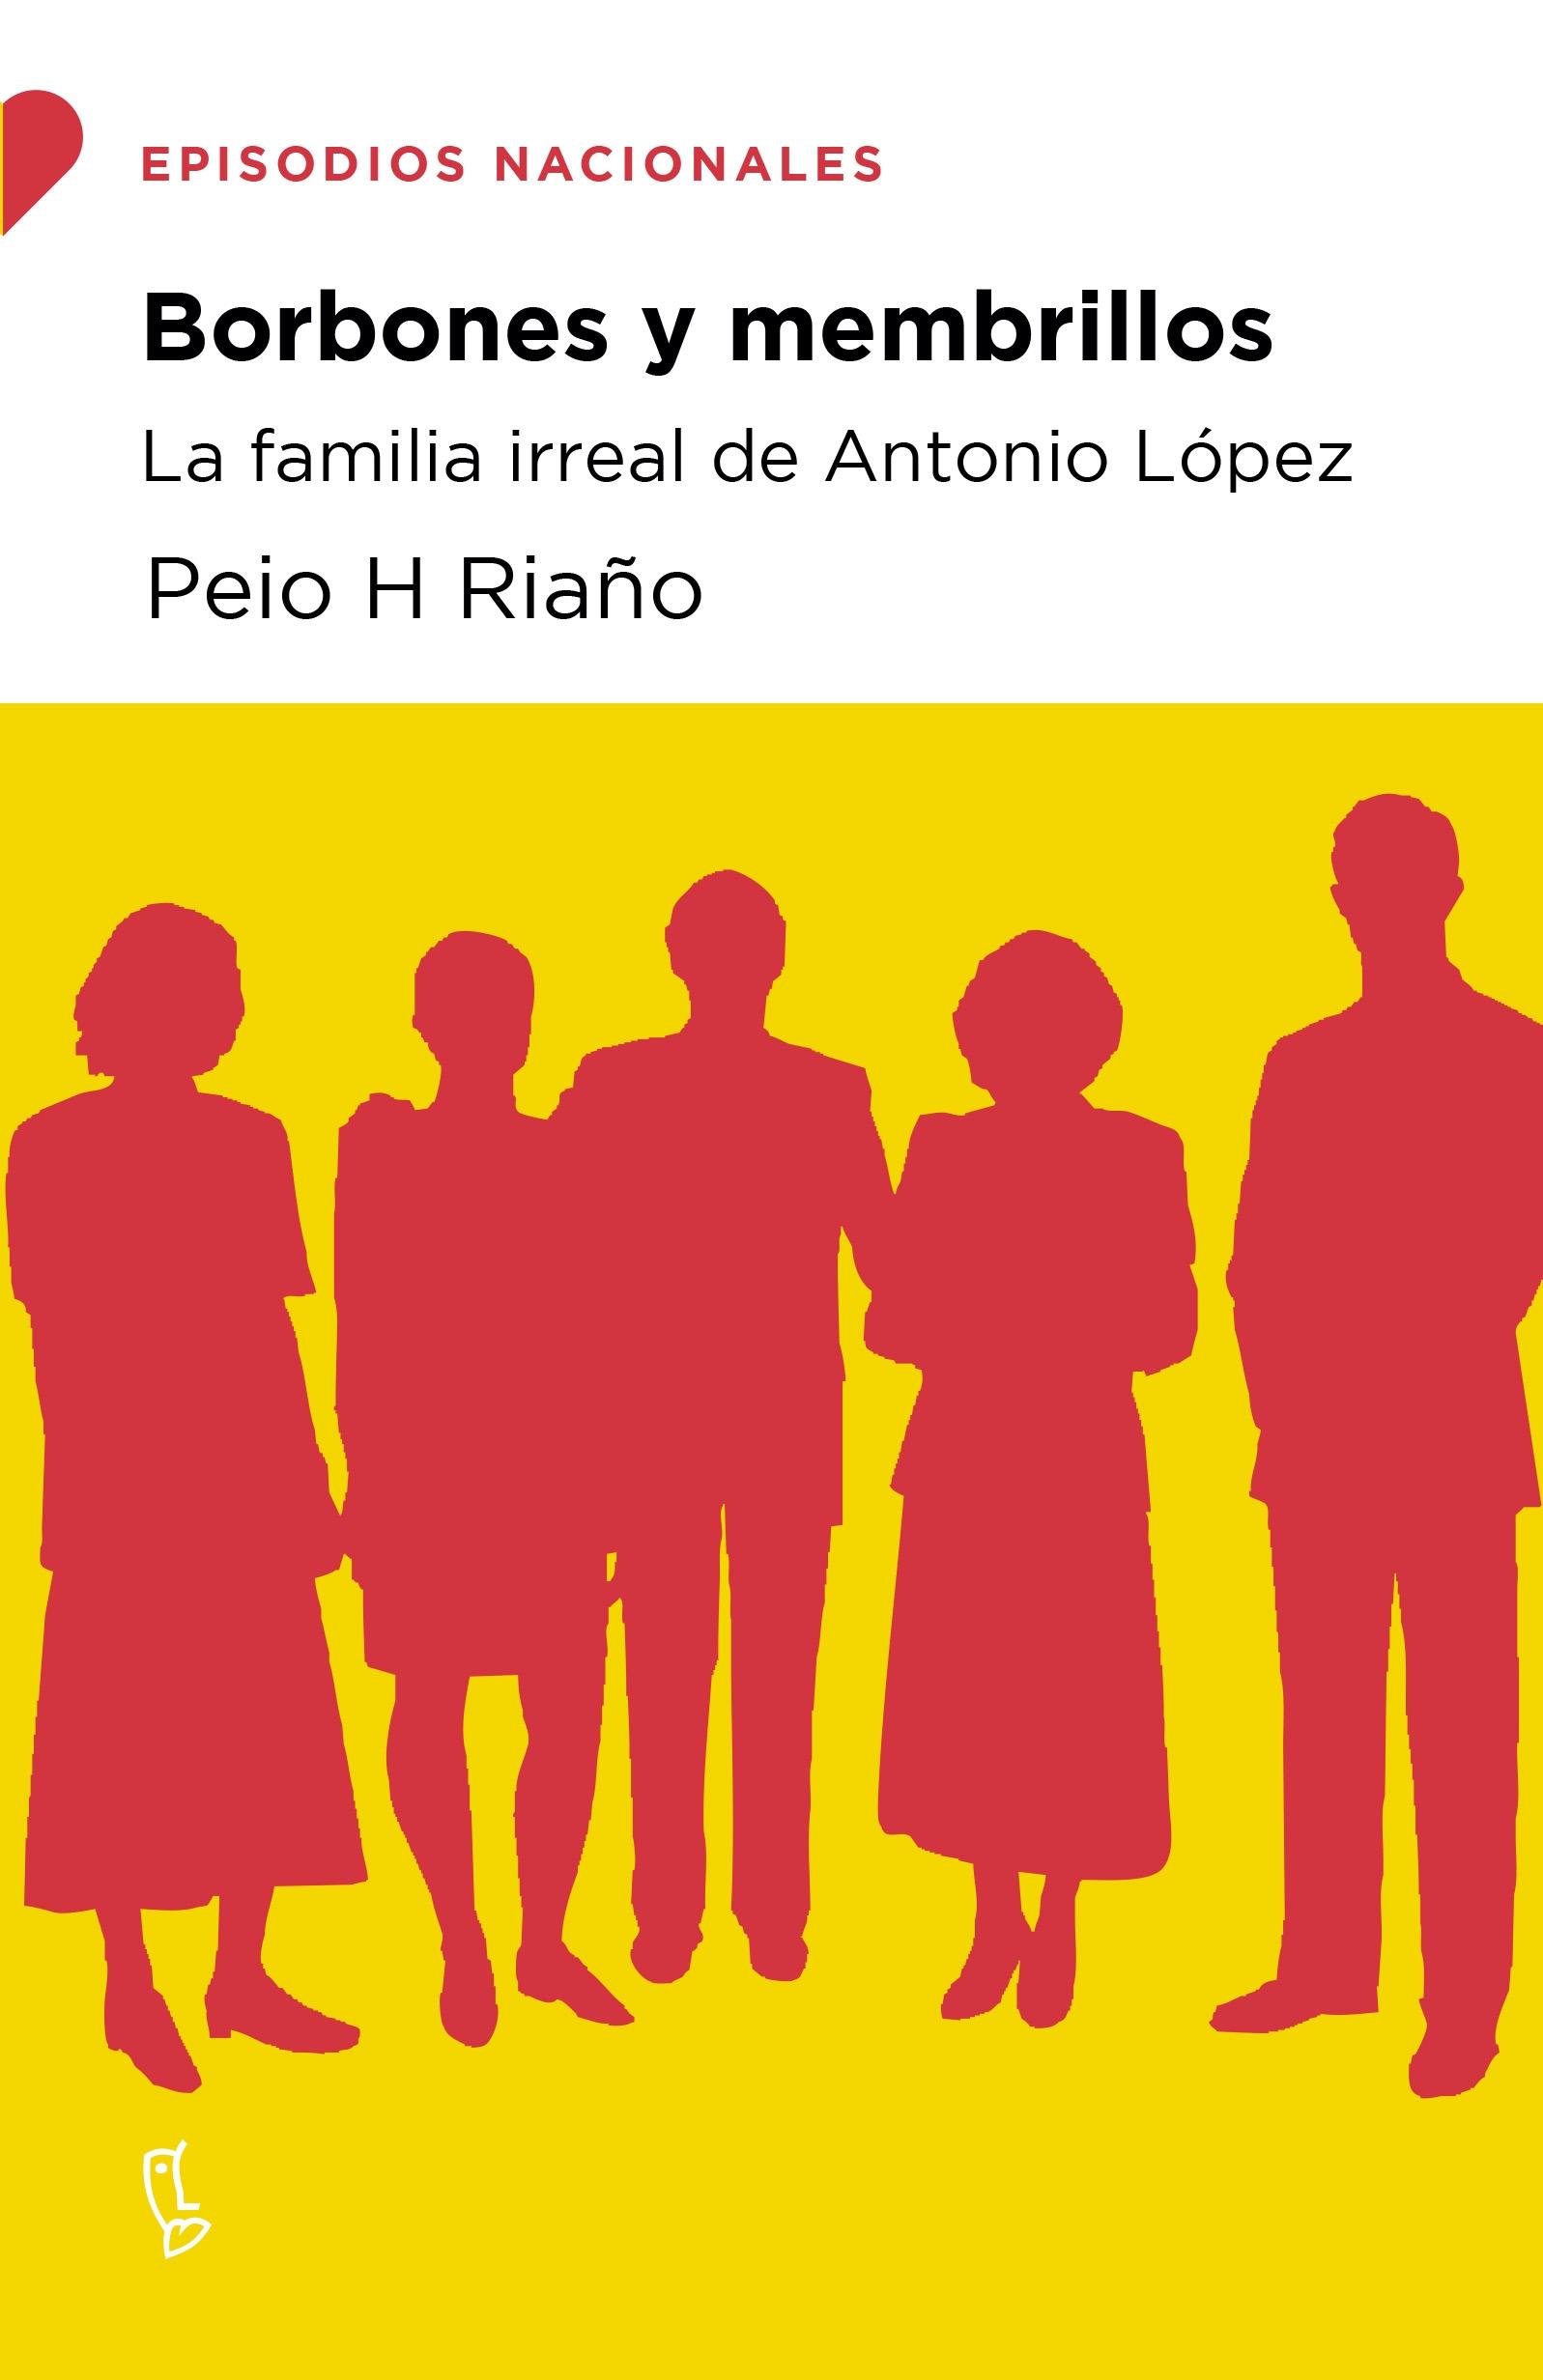 BORBONES Y MEMBRILLOS "LA FAMILIA IRREAL DE ANTONIO LOPEZ"